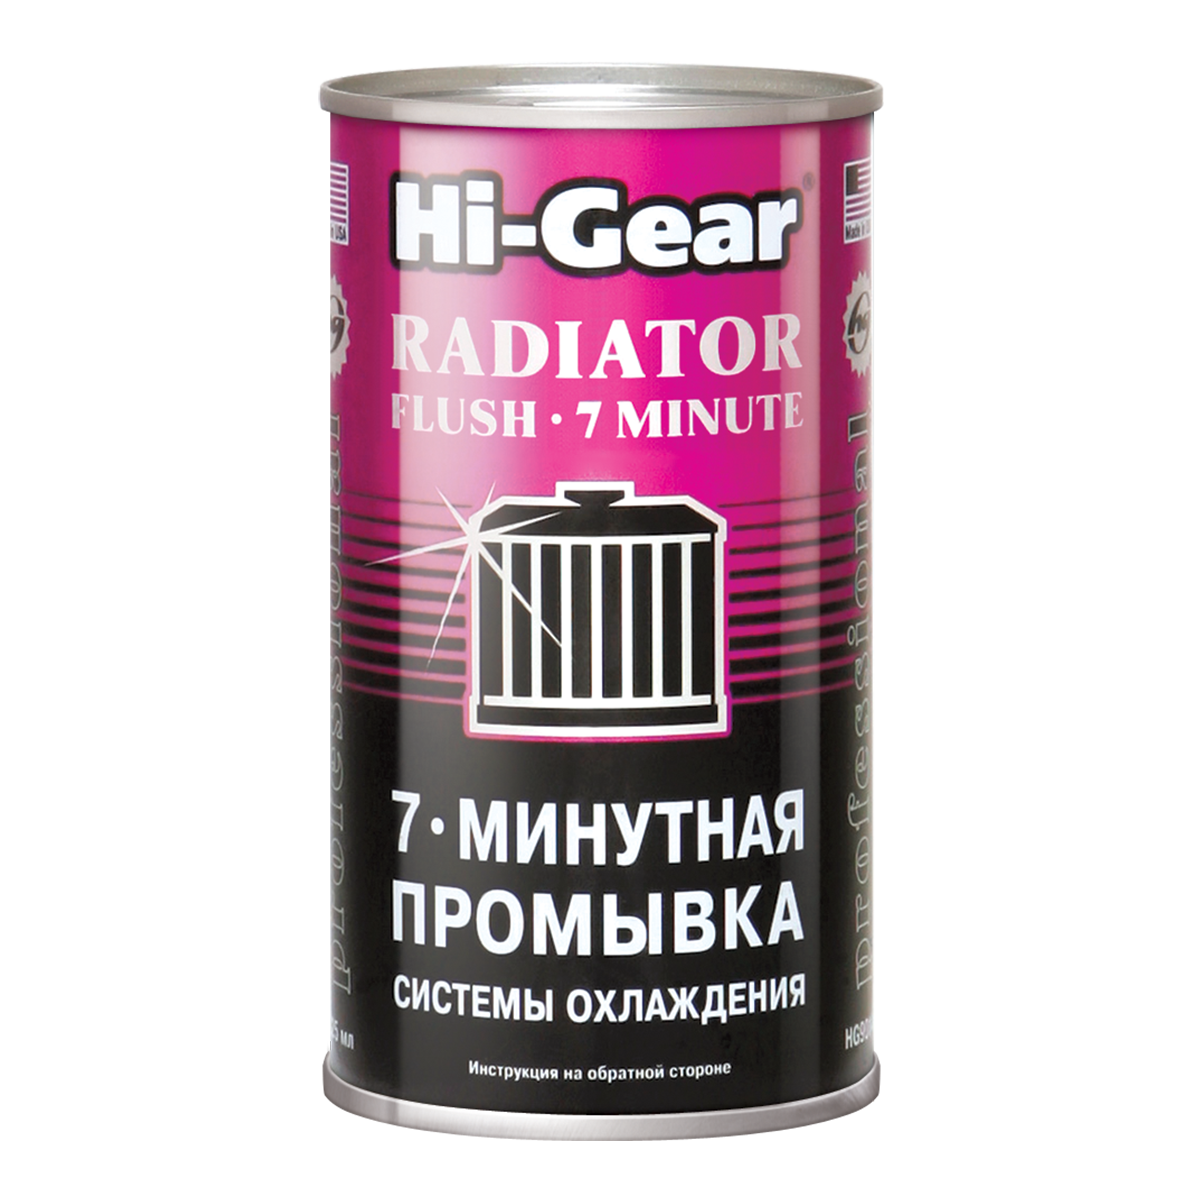 Hi-Gear HG9014 7-МИНУТНАЯ ПРОМЫВКА СИСТЕМЫ ОХЛАЖДЕНИЯ